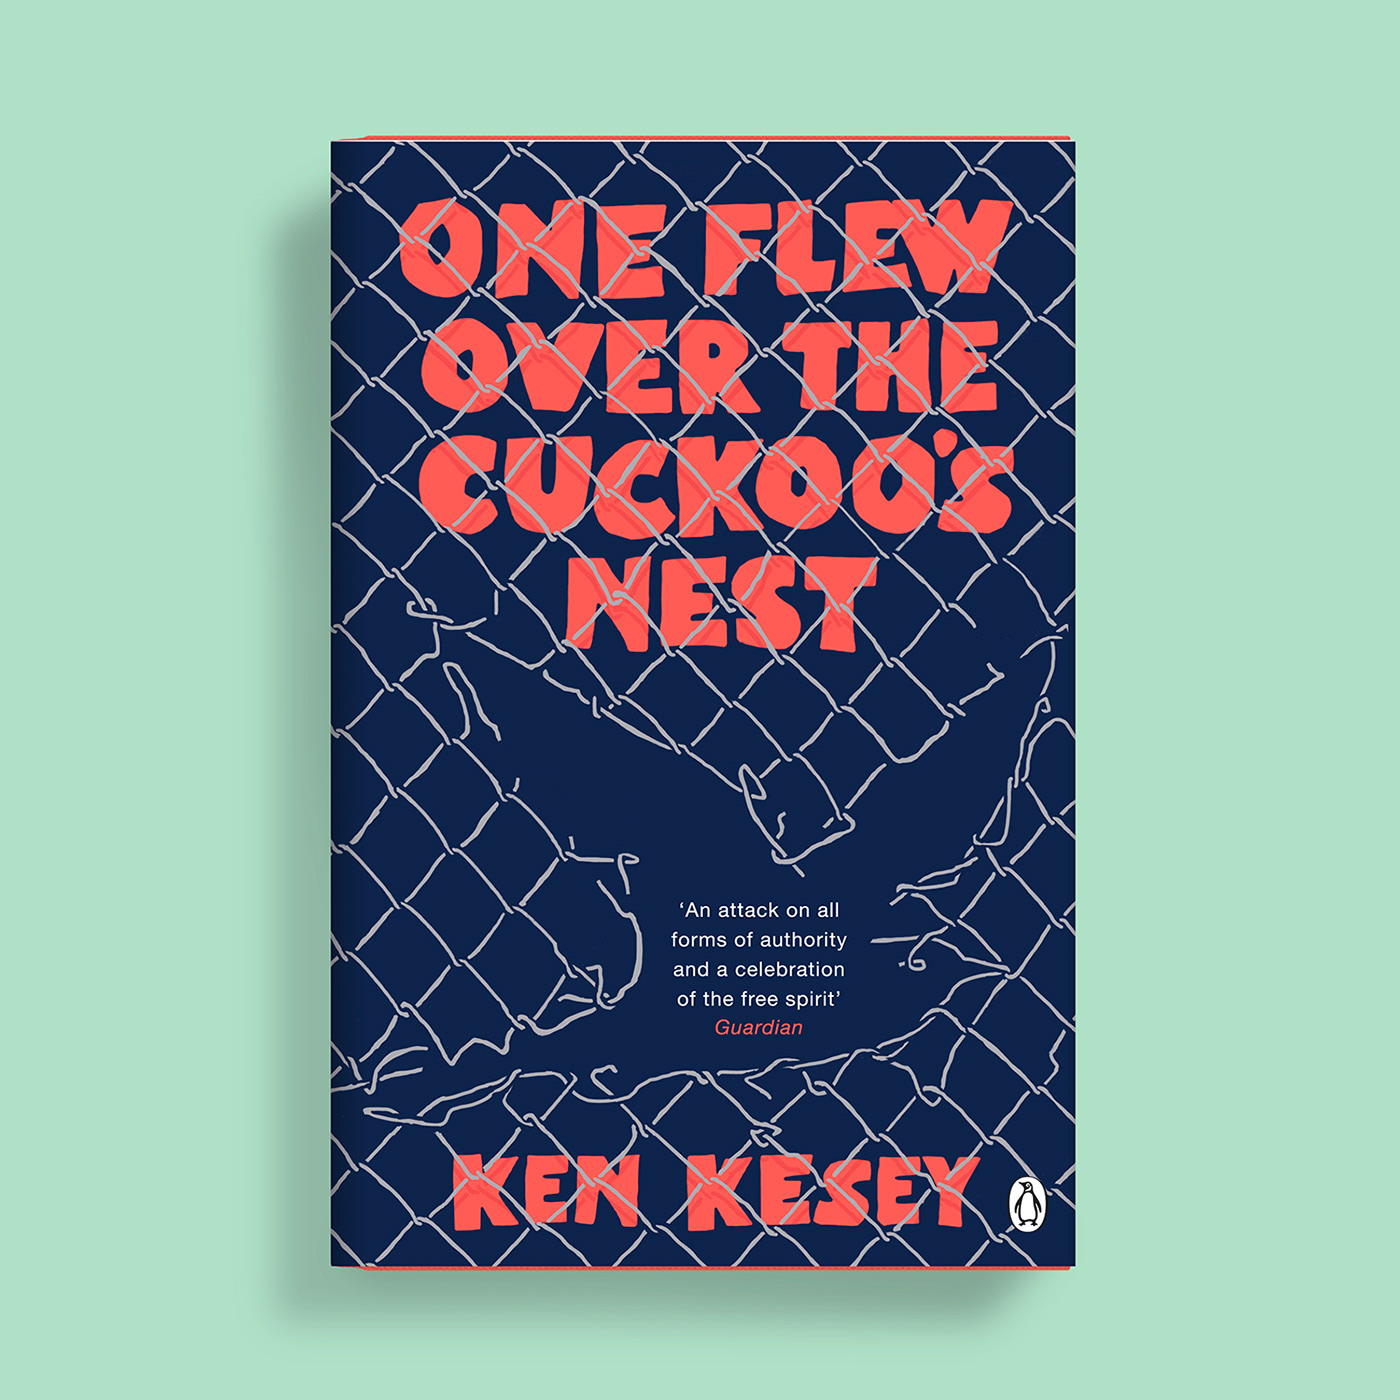 Book Cover Design cuckoos nest  Jet Purdie Ken Kesey re-jacket self-initiated